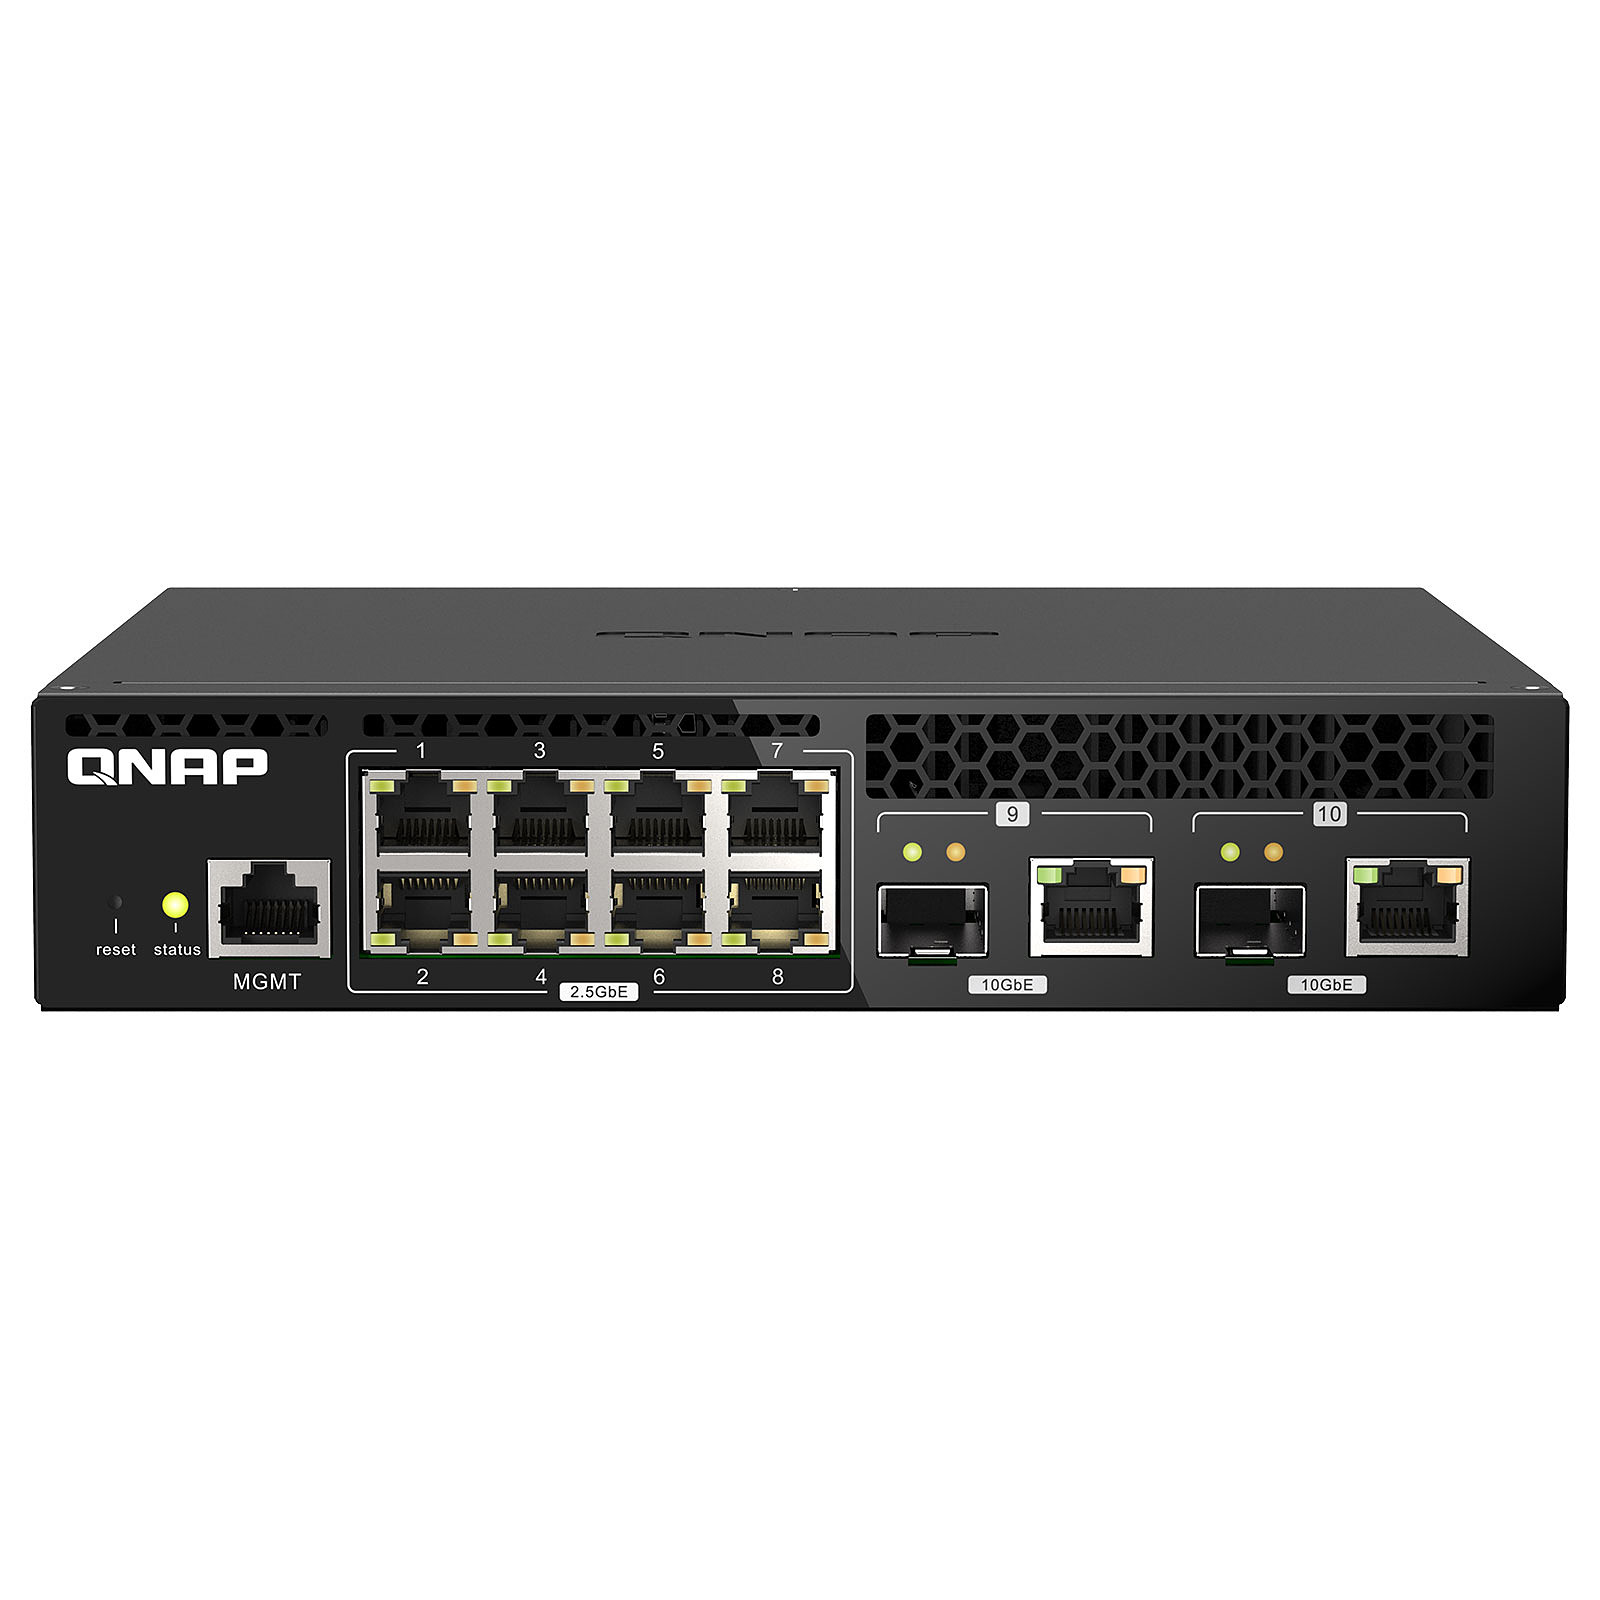 QNAP QSW-M2108R-2C - Switch QNAP